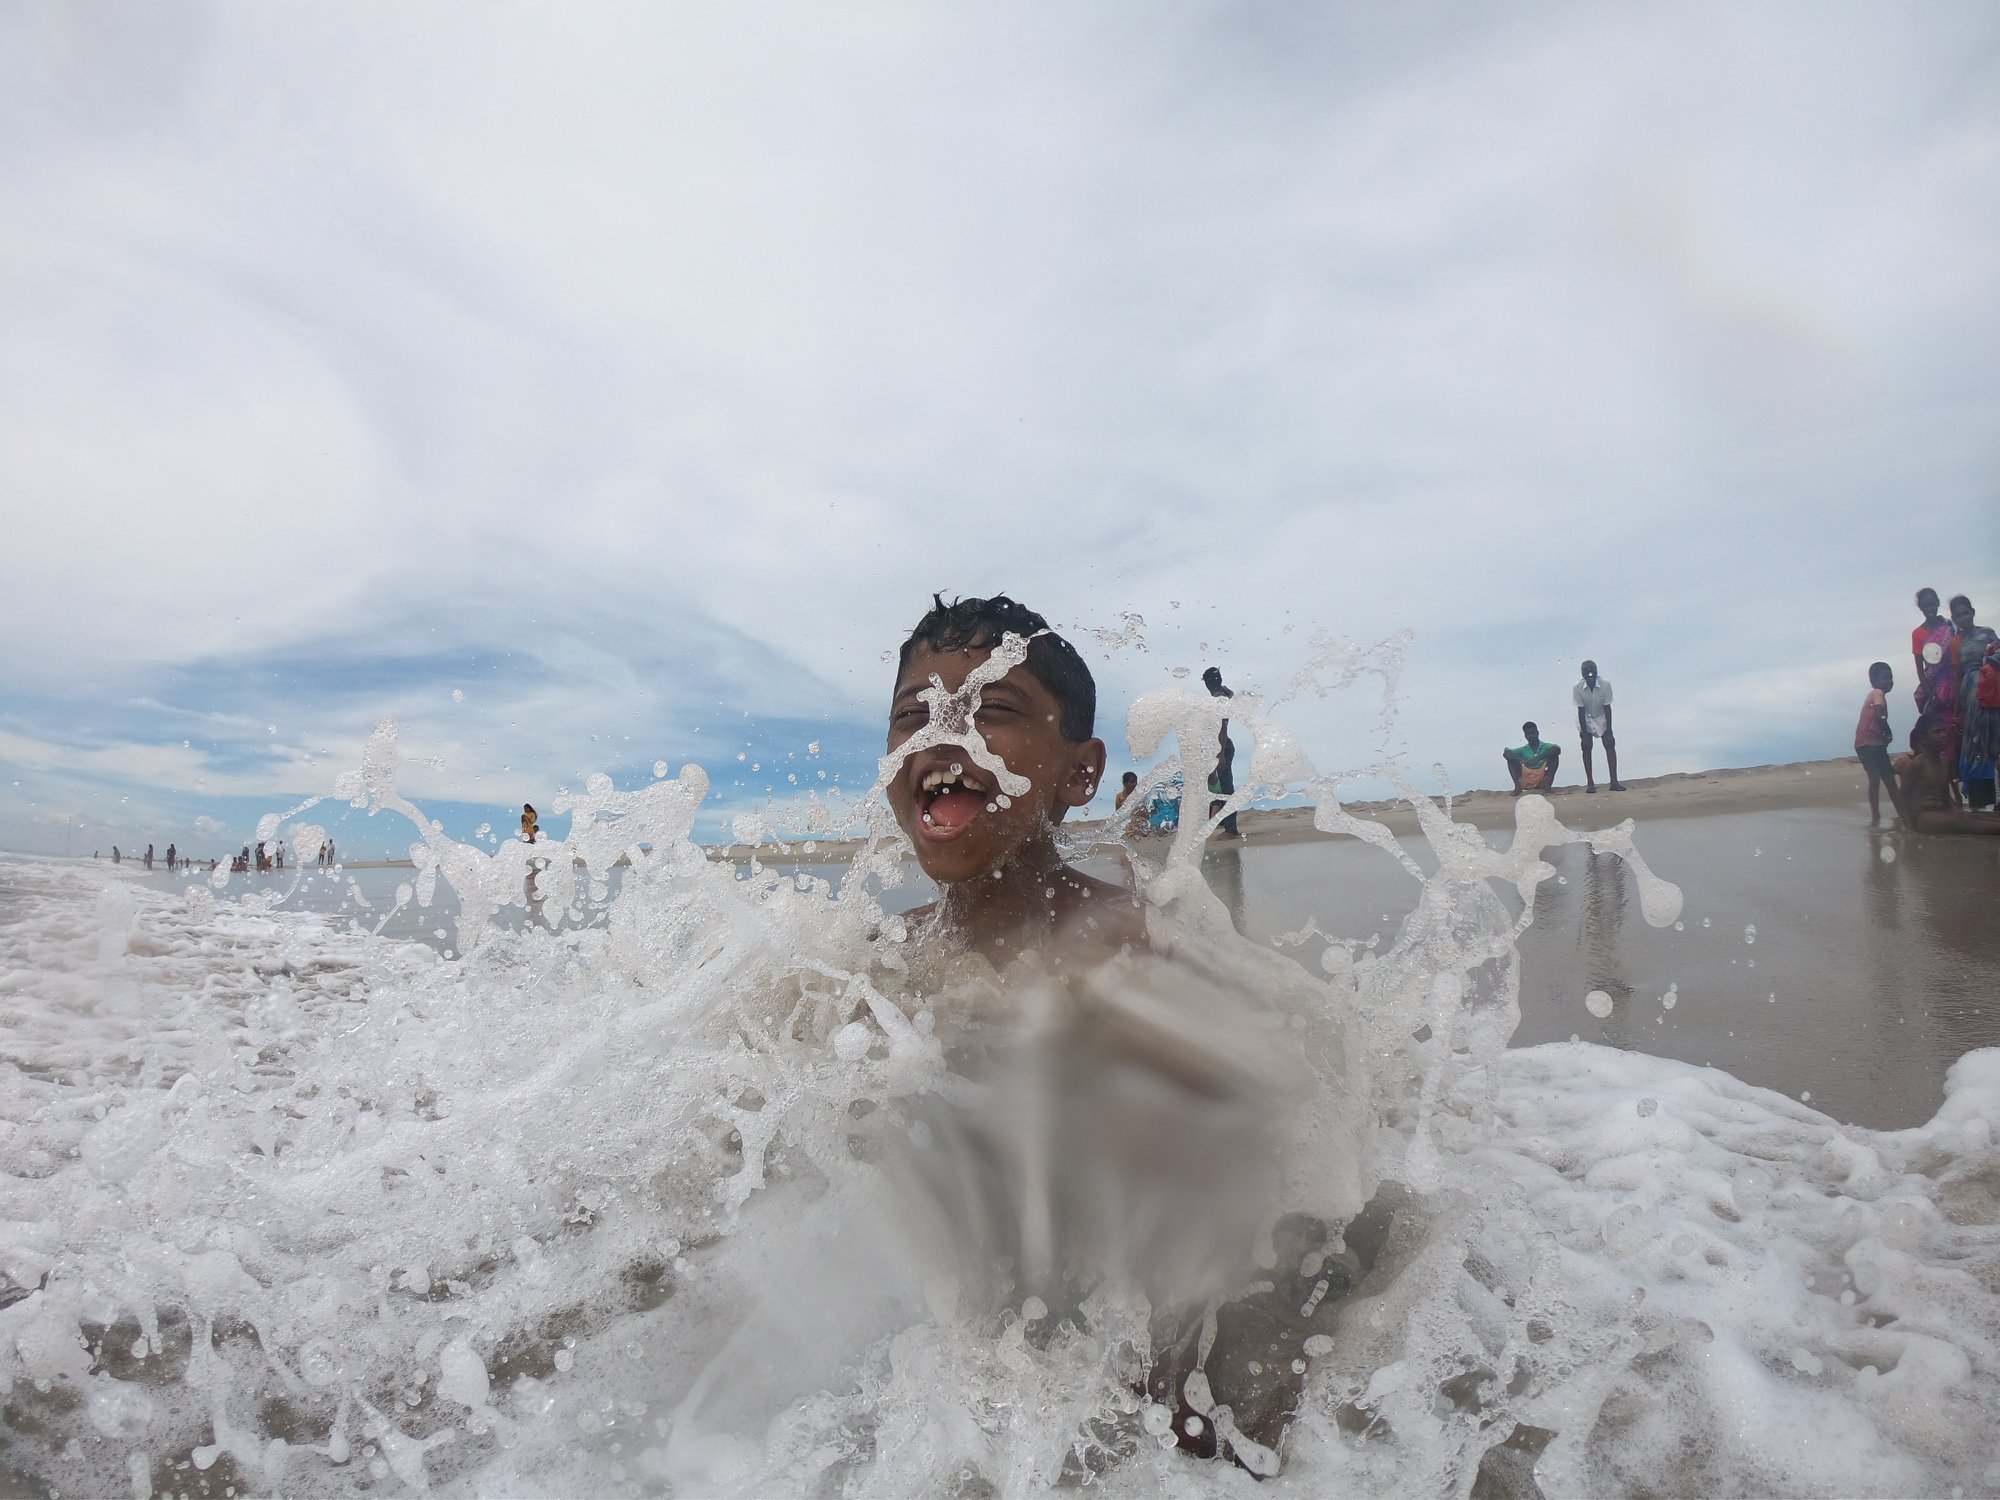 Nandu enjoying his time at Dhanushkodi Beach-Arichal Munai in Tamil Nadu near Ram Setu Point